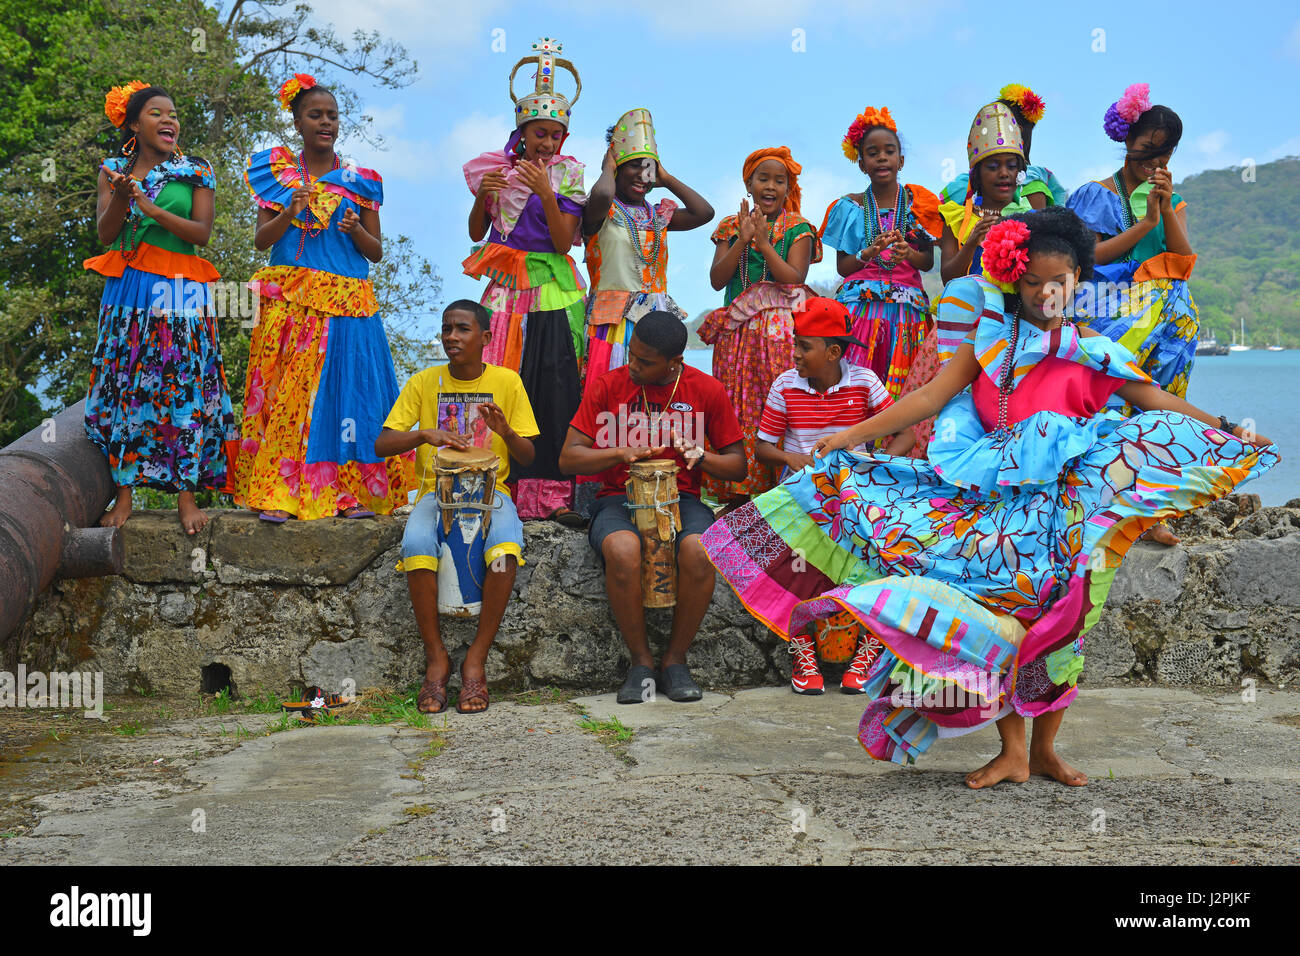 Congo tradizionale spettacolo di danza all'interno della fortezza spagnola di Santiago in Portobelo, Panama. I ballerini panamense indossare abiti tradizionali. Foto Stock